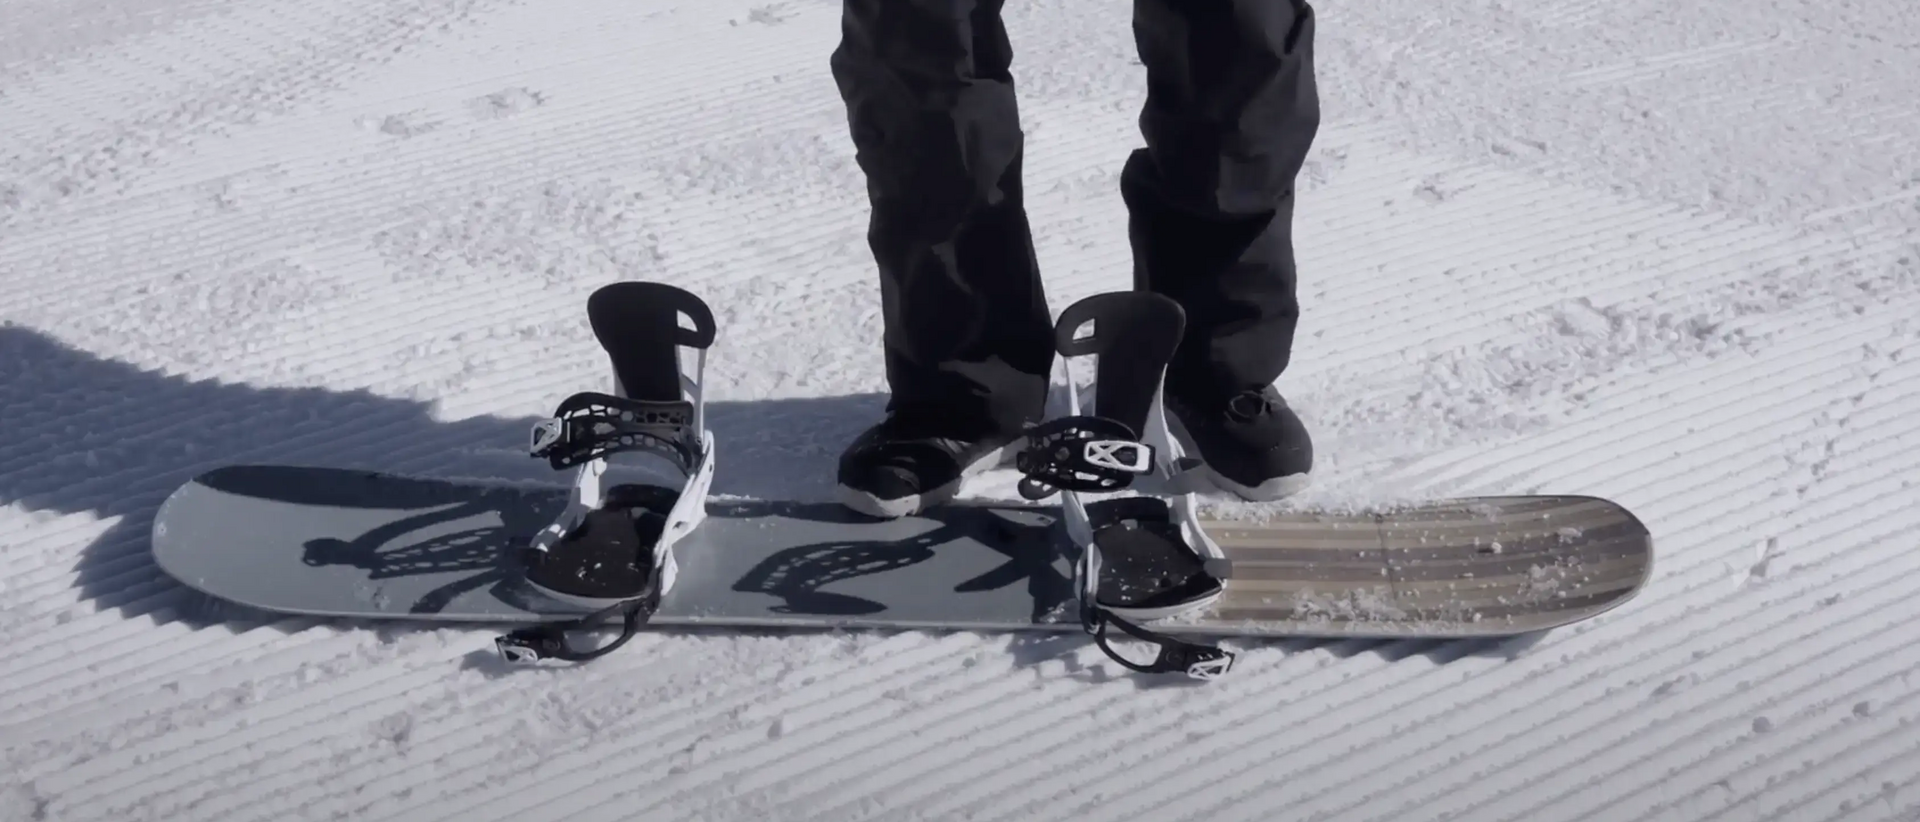 deska snowboardowa z wiązaniami